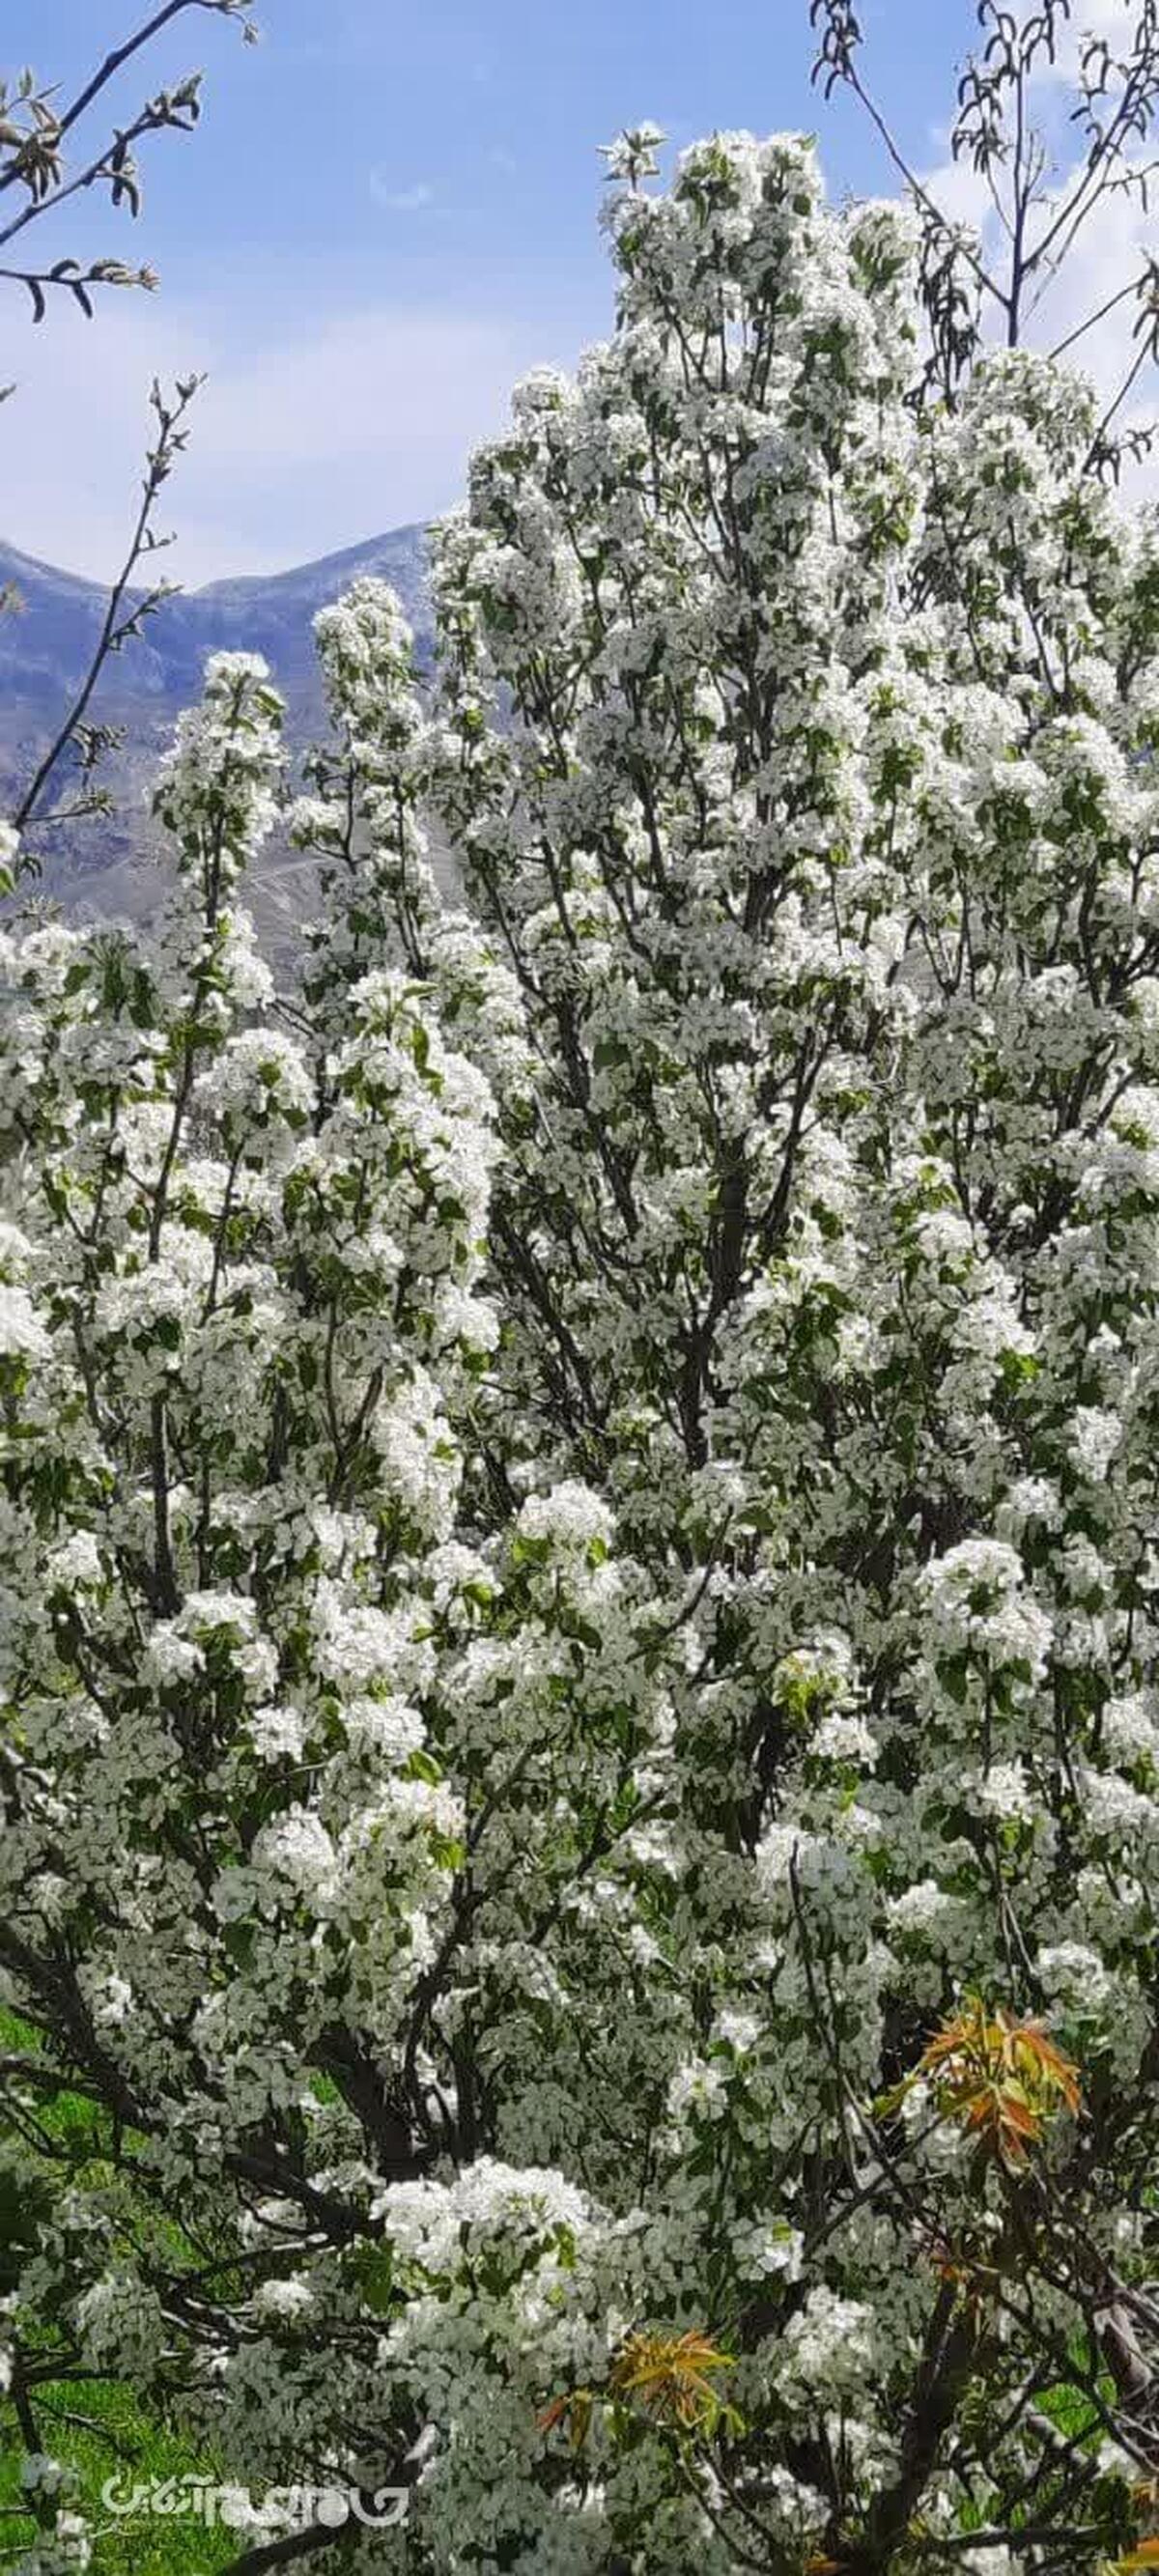 شکوفه های باغات گیلاس ، آلبالو و گلابی در حوزه ترسیب کربن آزادشهر از محل توزیع نهالهای رایگان، طی ۶ سال به جوامع محلی هم اکنون خودنمایی میکند.